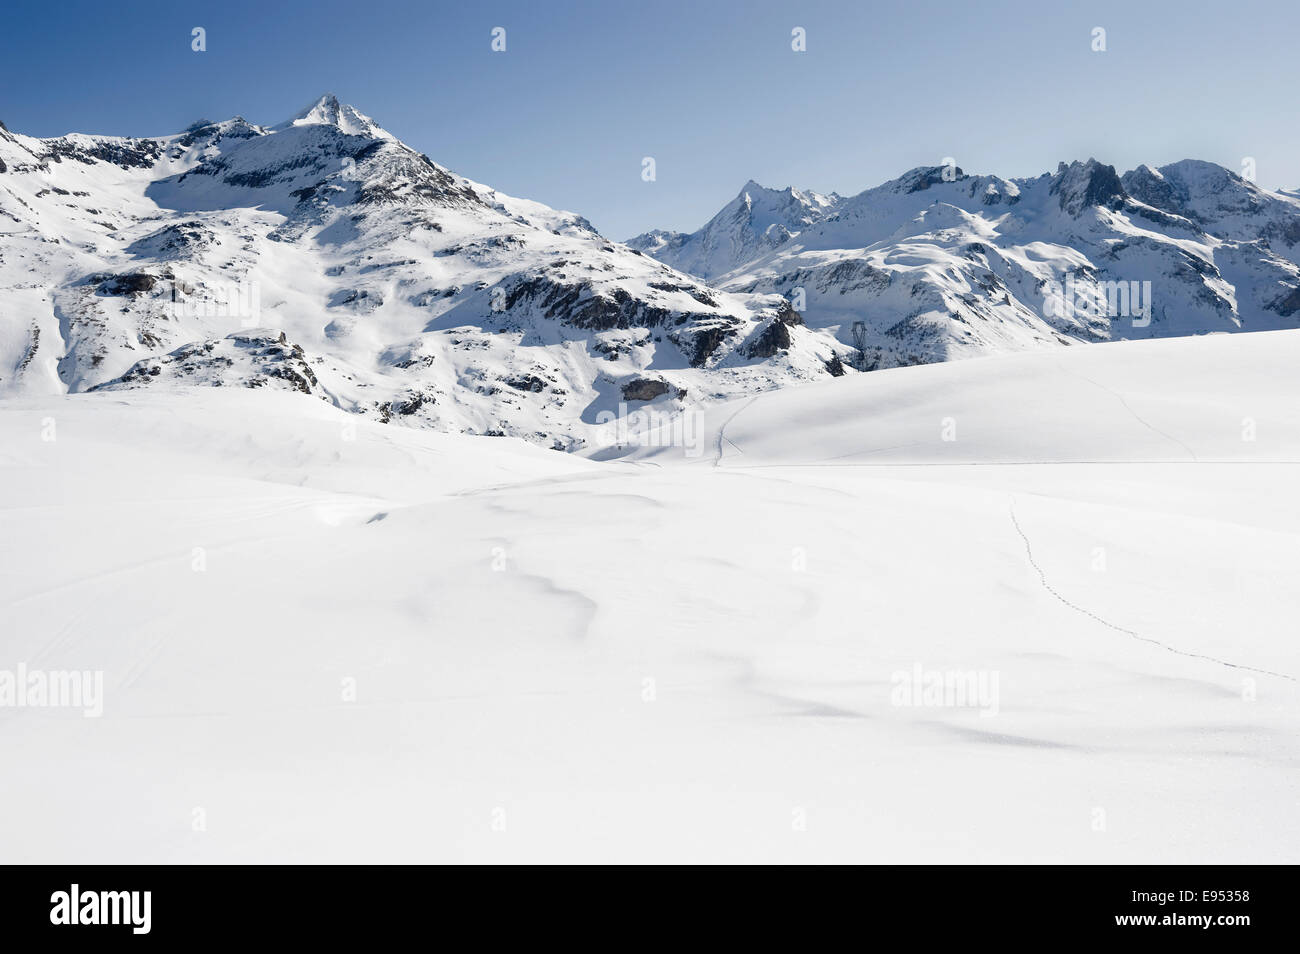 Snowy mountain landscape, Tignes, Val-d’Isère, Département Savoie, Alps, France Stock Photo